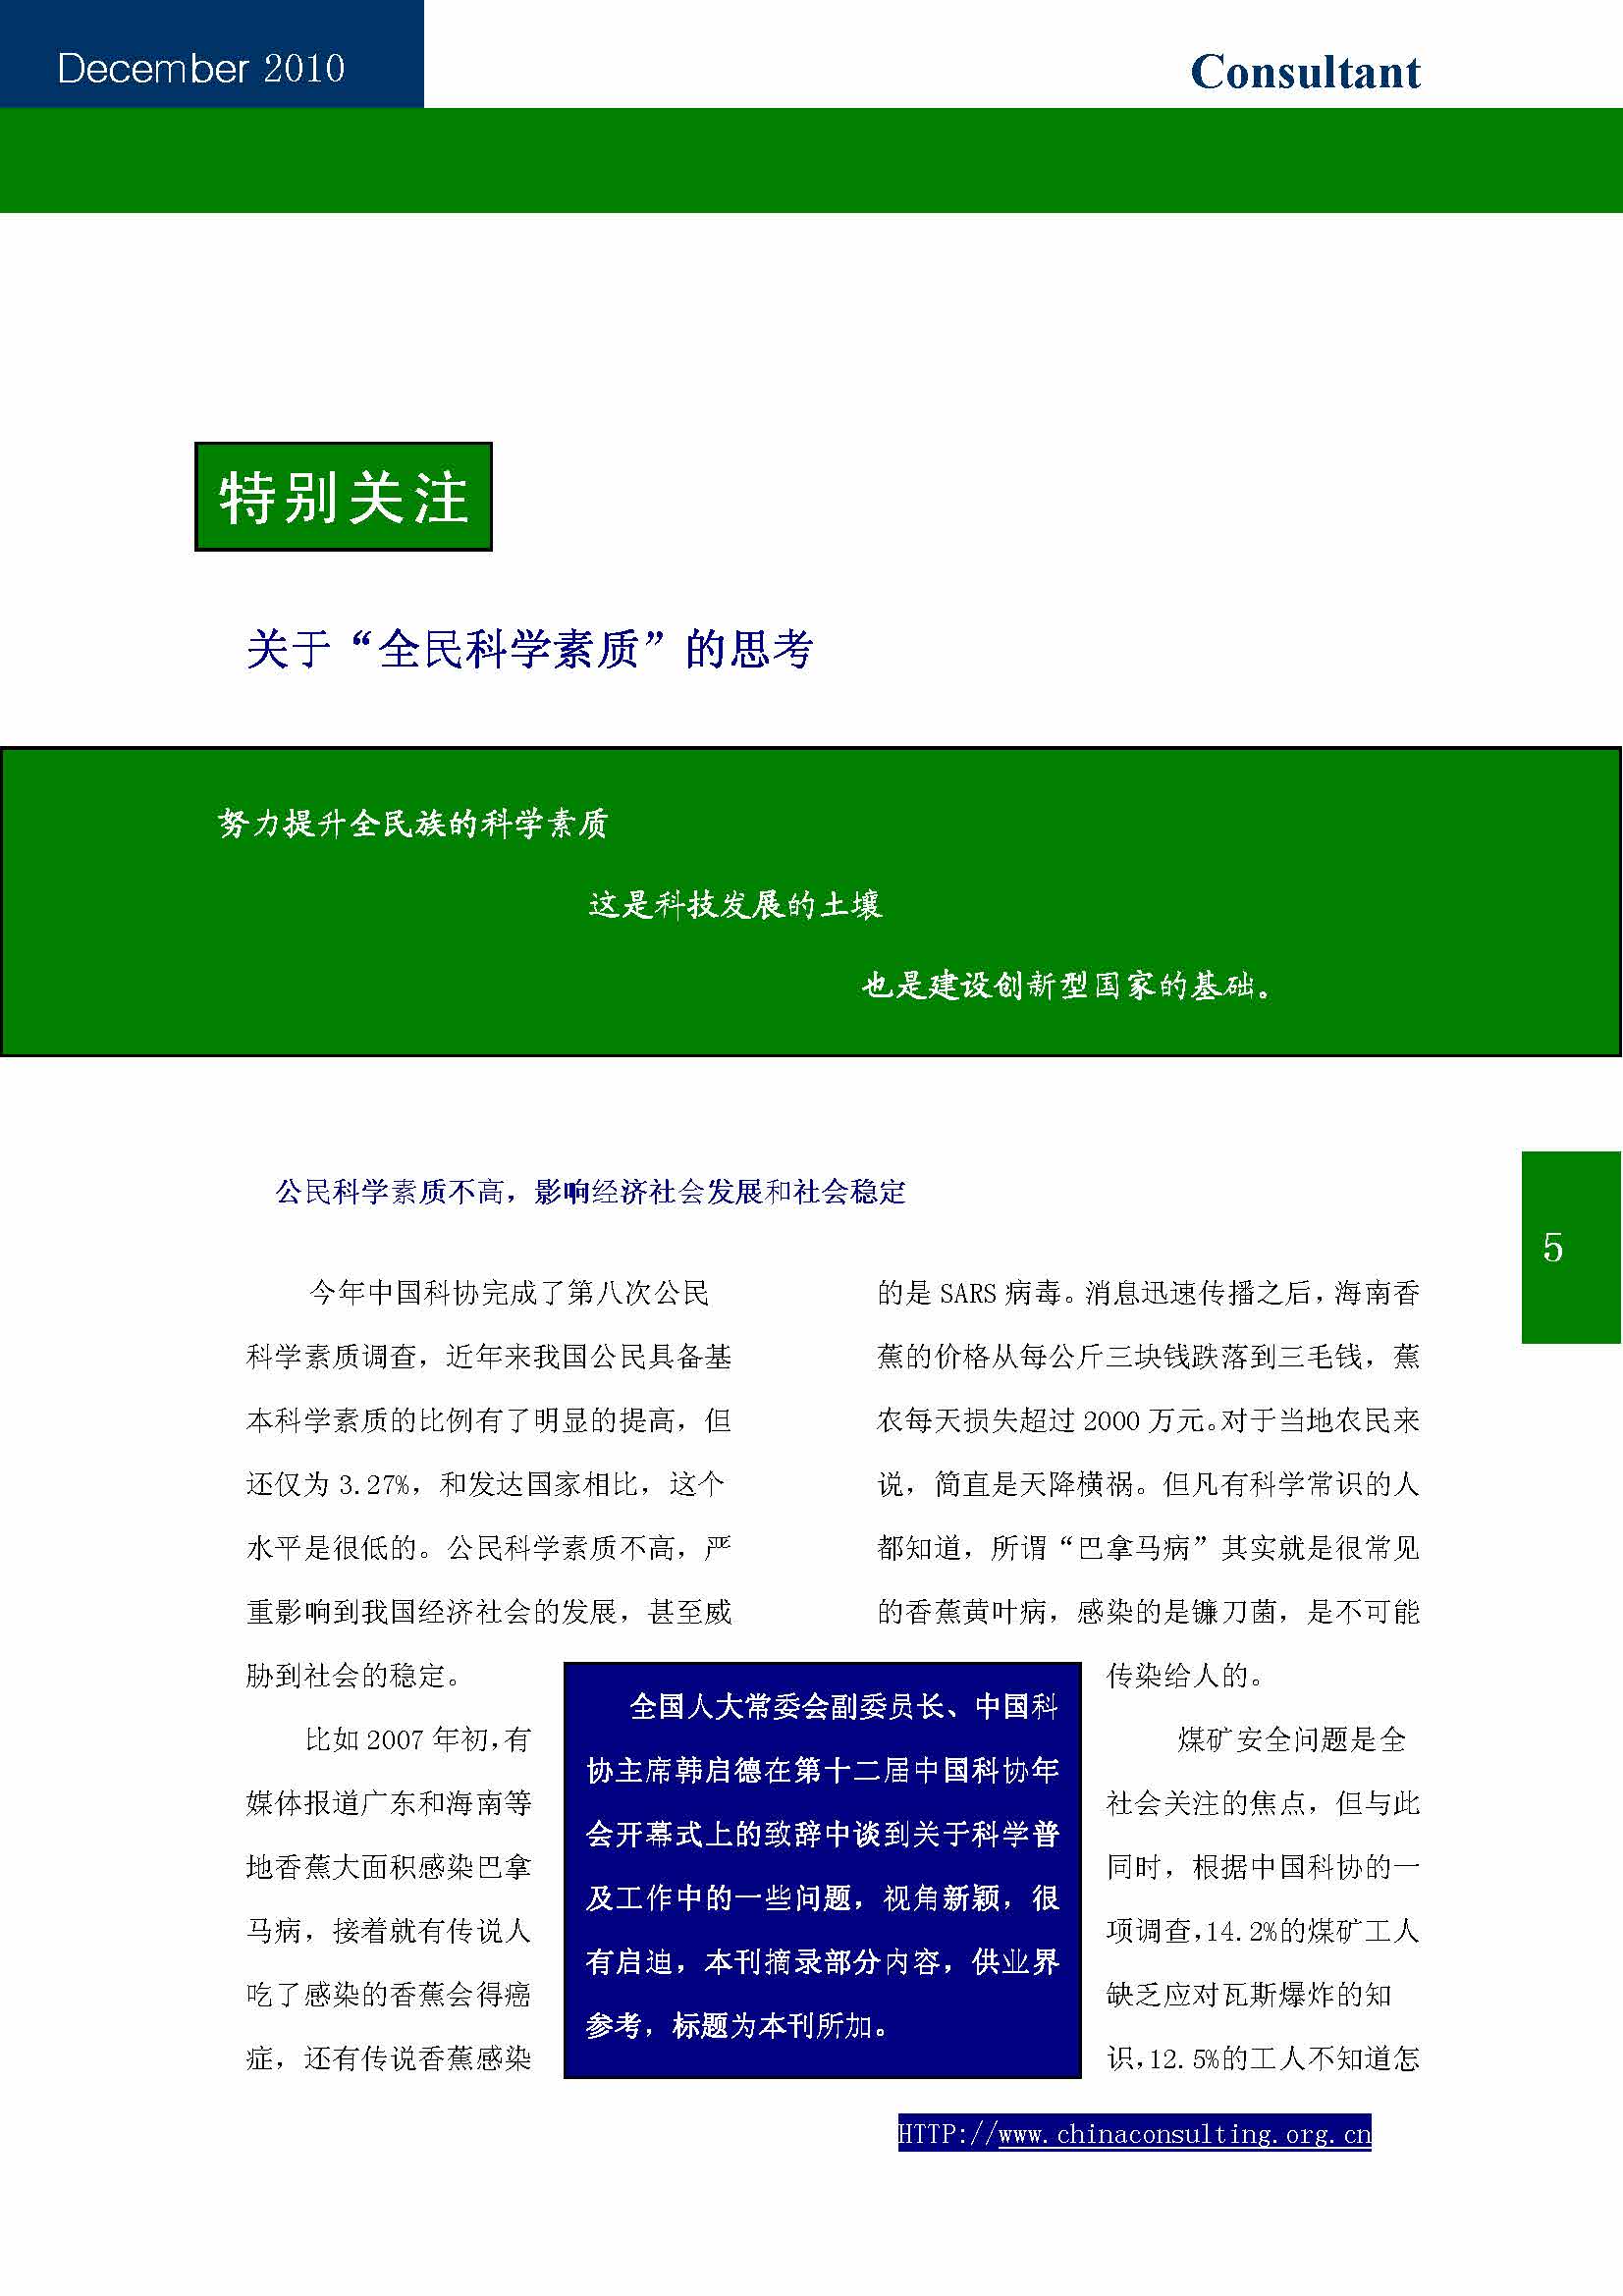 13中国科技咨询协会第十三期会刊_页面_07.jpg